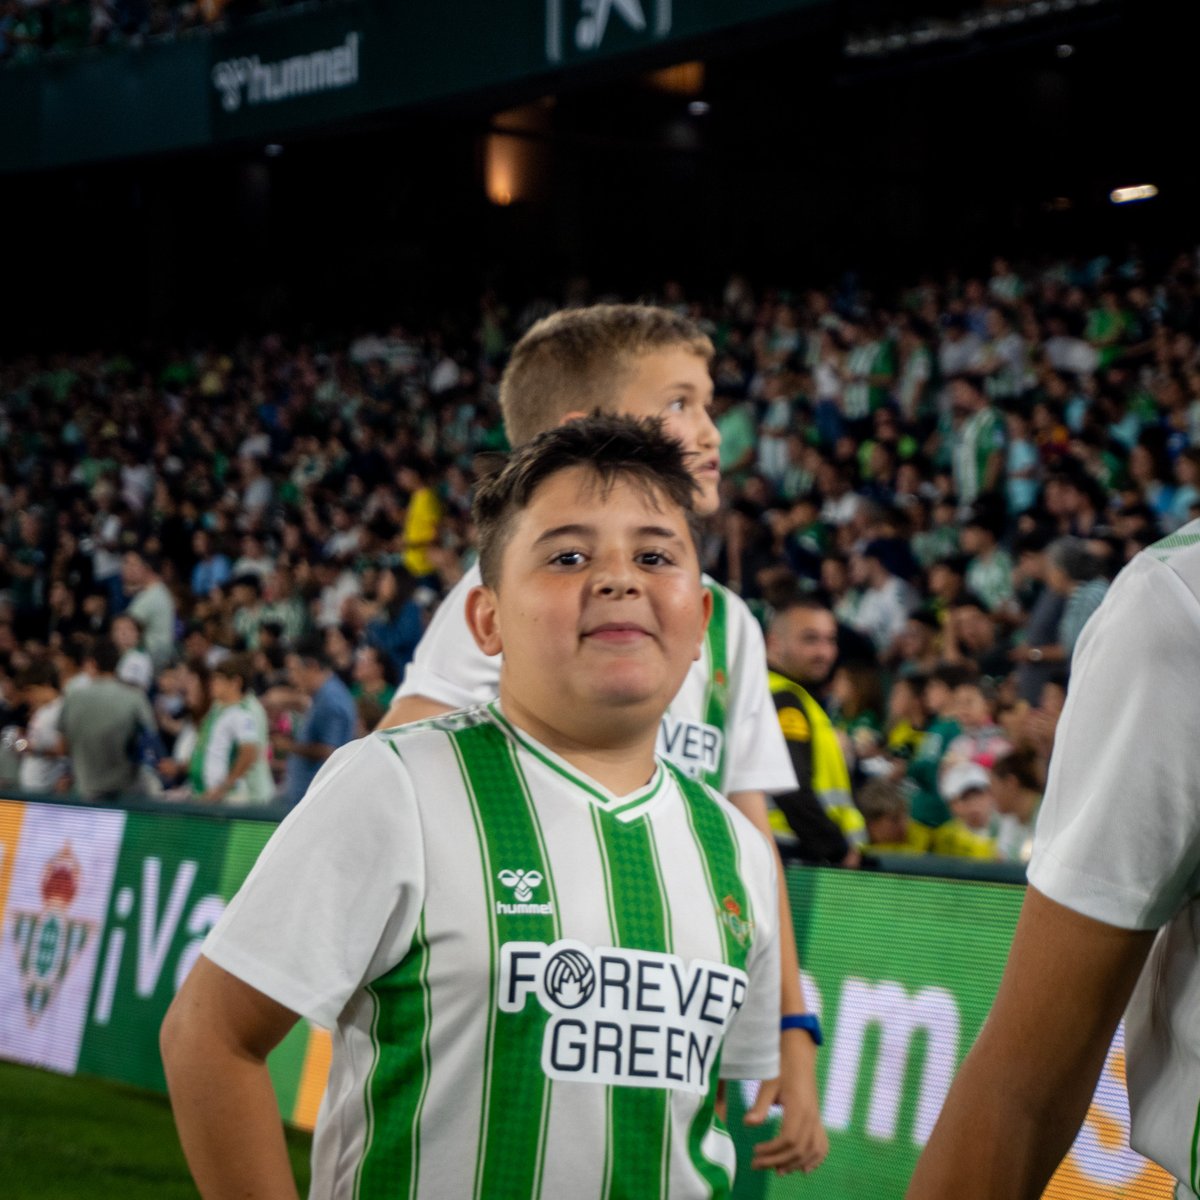 ¡Cómo disfrutaron los niños de la Escuela Betis durante su presentación en el Estadio Benito Villamarín! 💚 Hay imágenes que valen más que mil palabras ☺️✌️